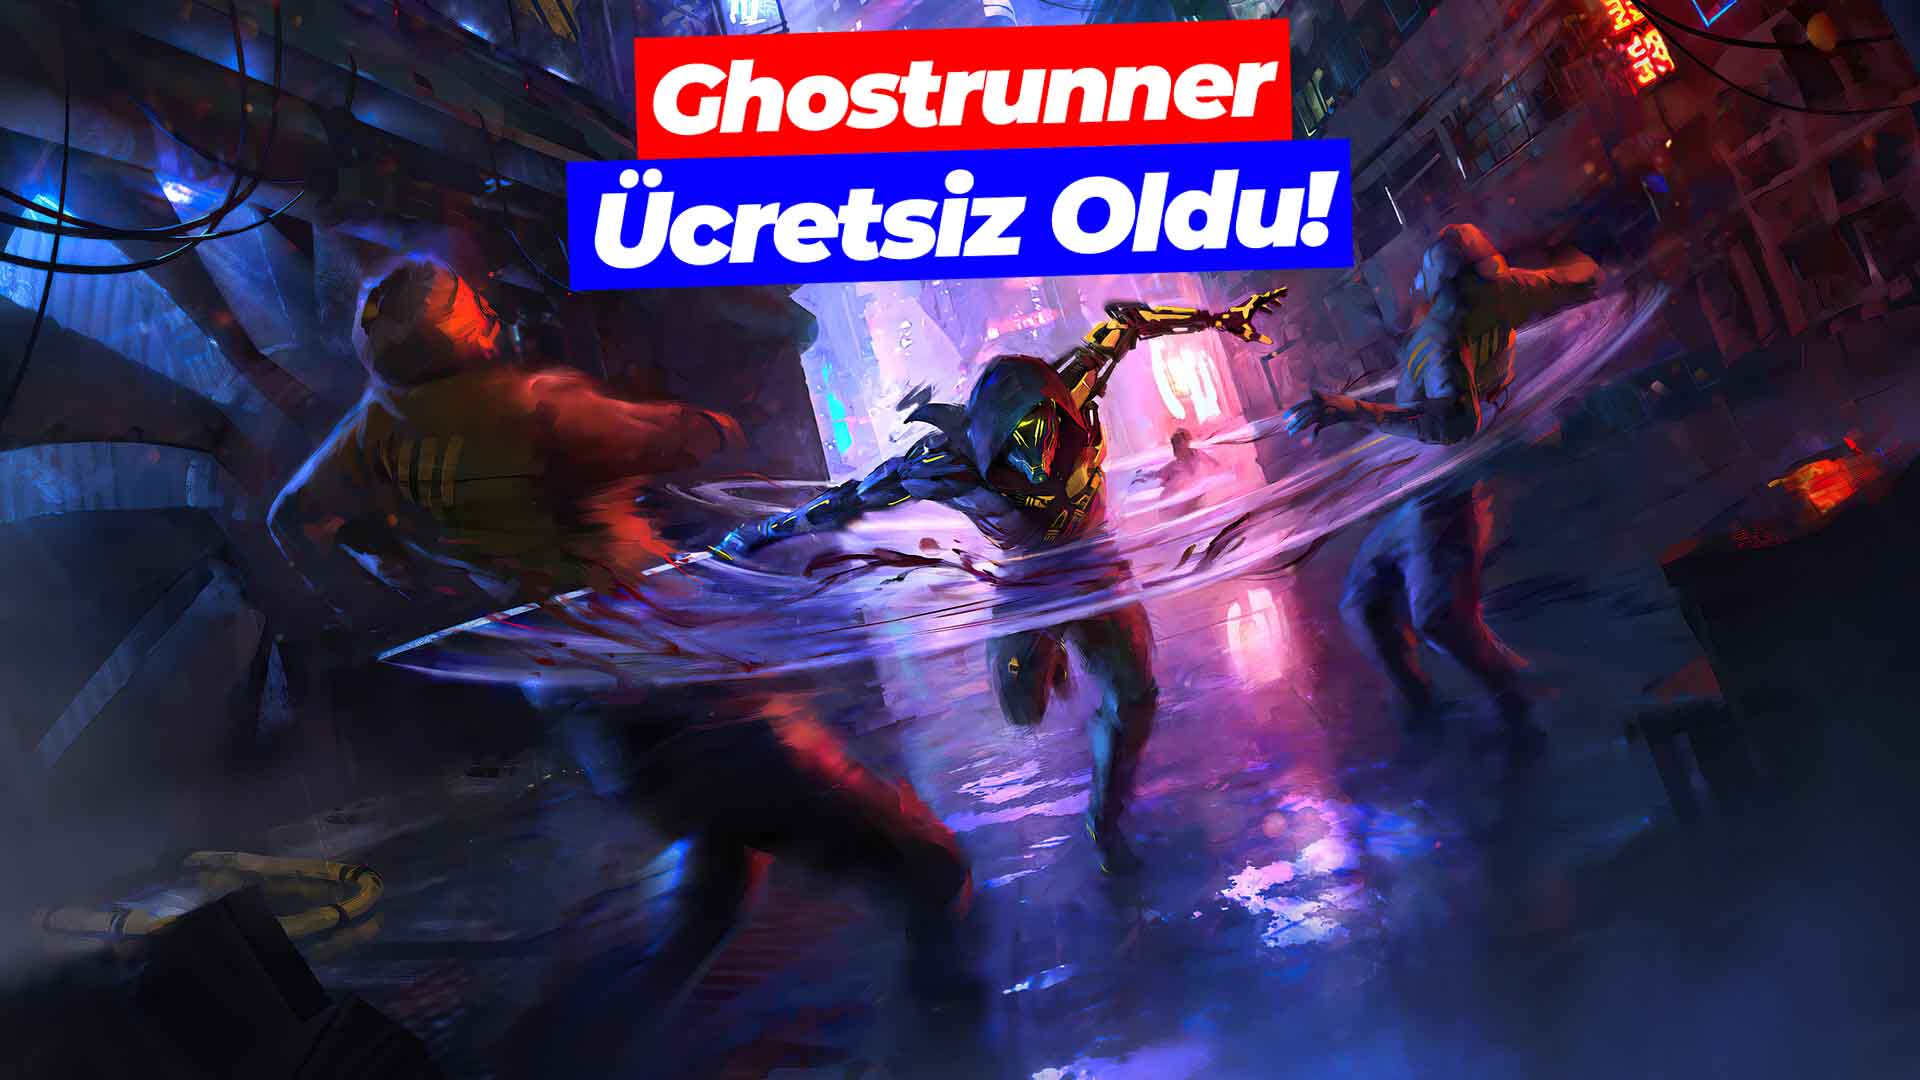 Ghostrunner ücretsiz oldu